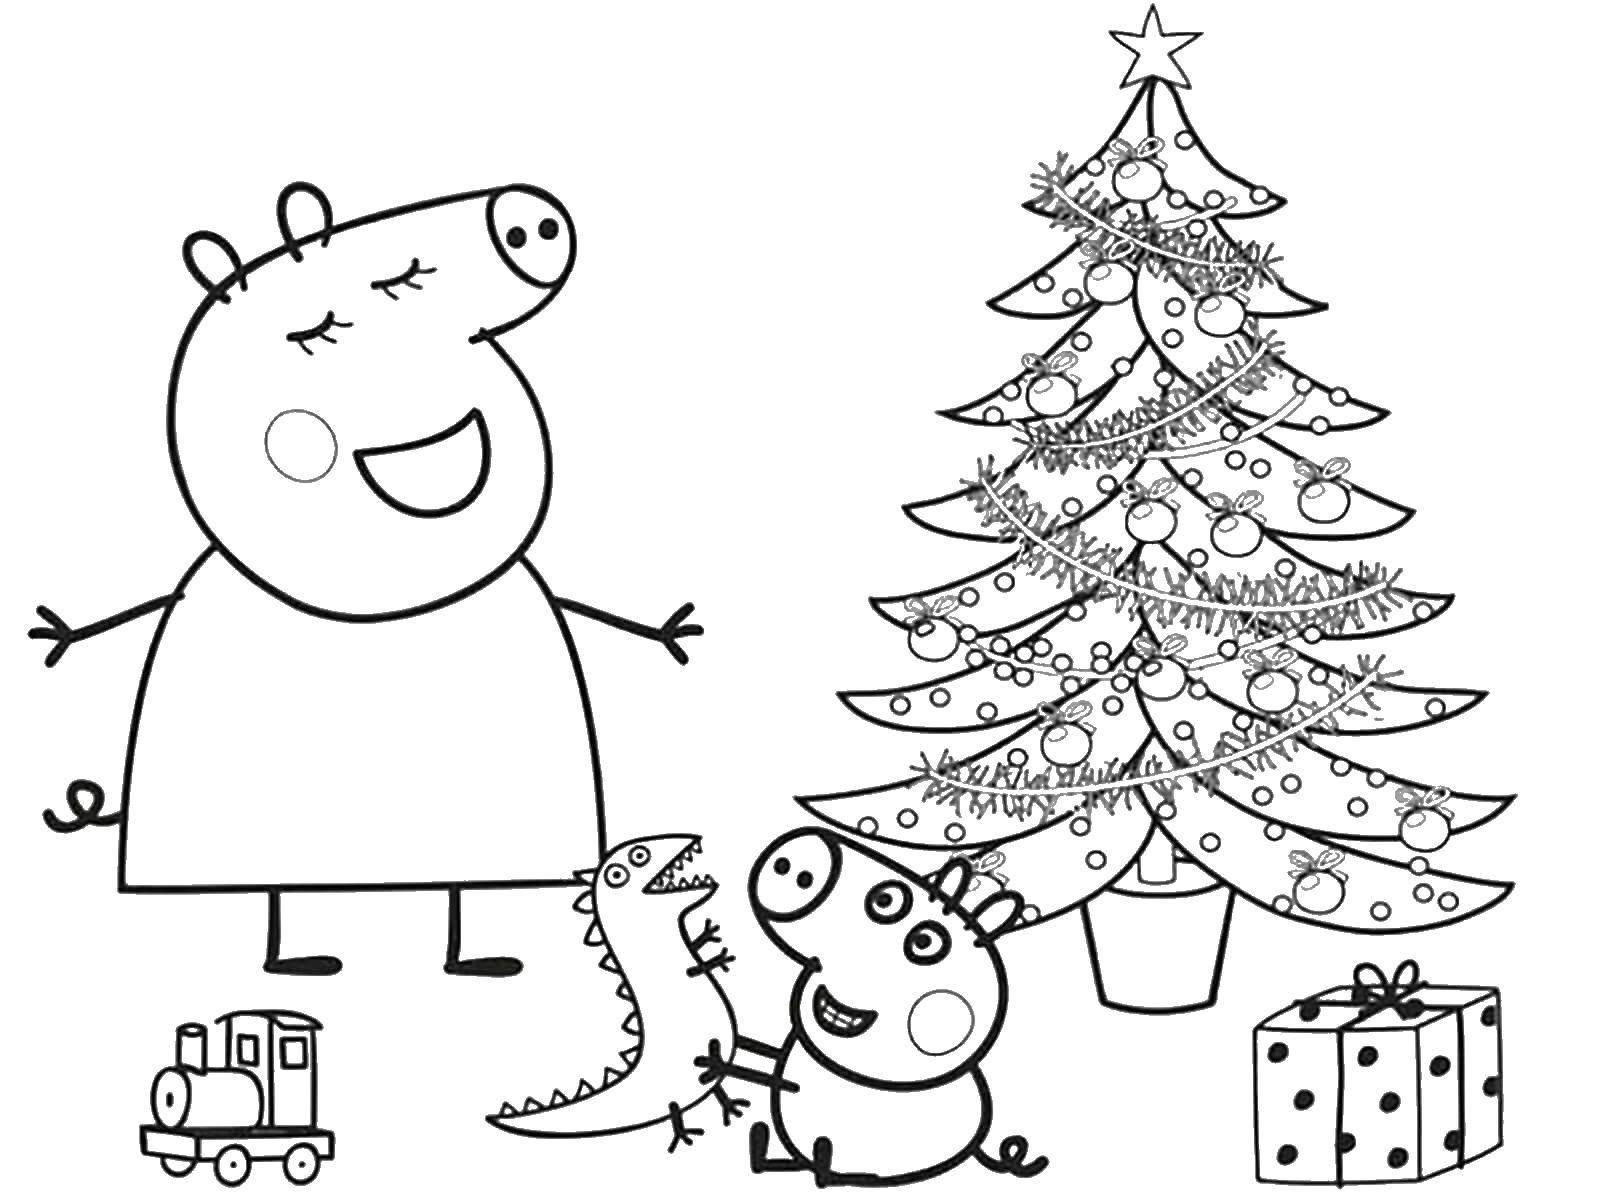 Познавательные и забавные раскраски для детей про свинку Пеппу  Свинка пеппа и рождество